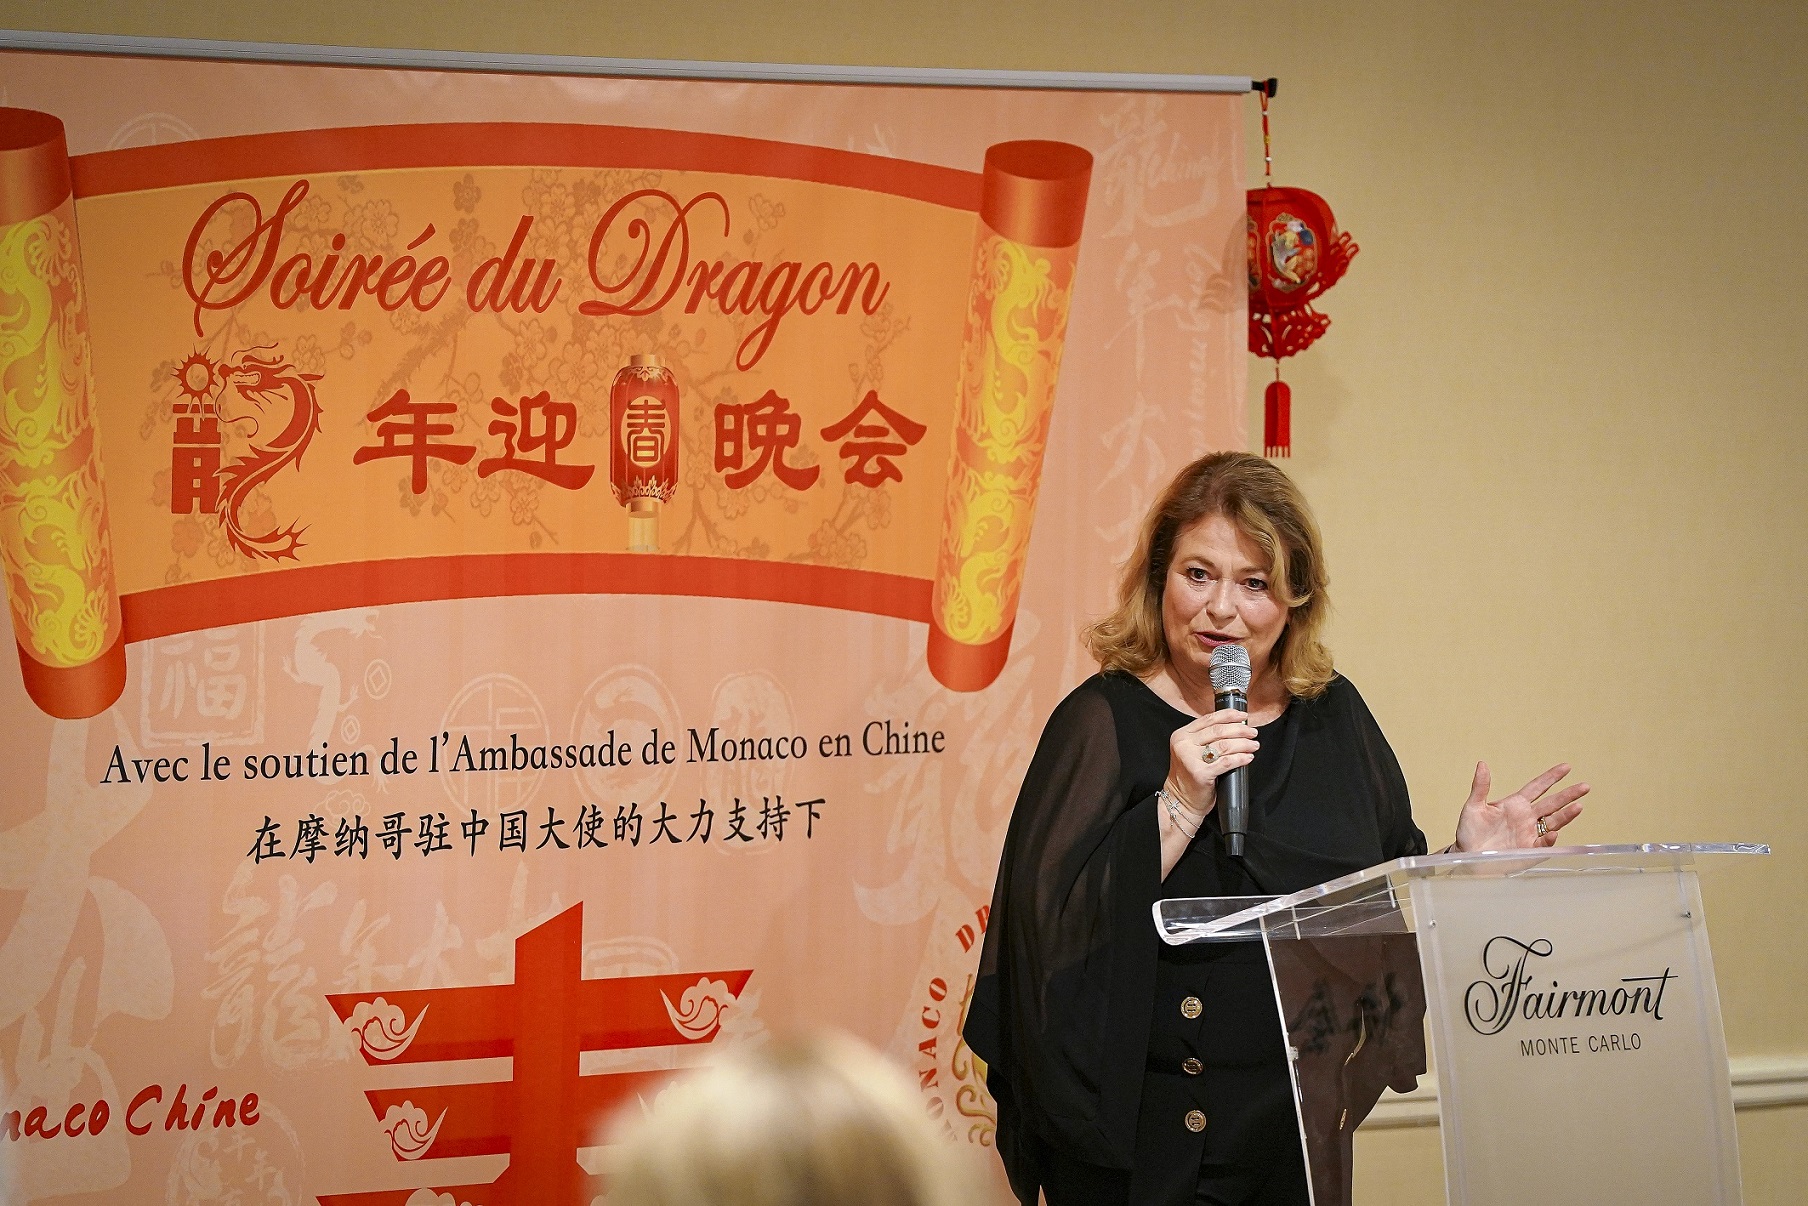 L’association Monaco-Chine, avec le soutien de l’Ambassade de Monaco en Chine célèbre l’Année du Dragon de Bois